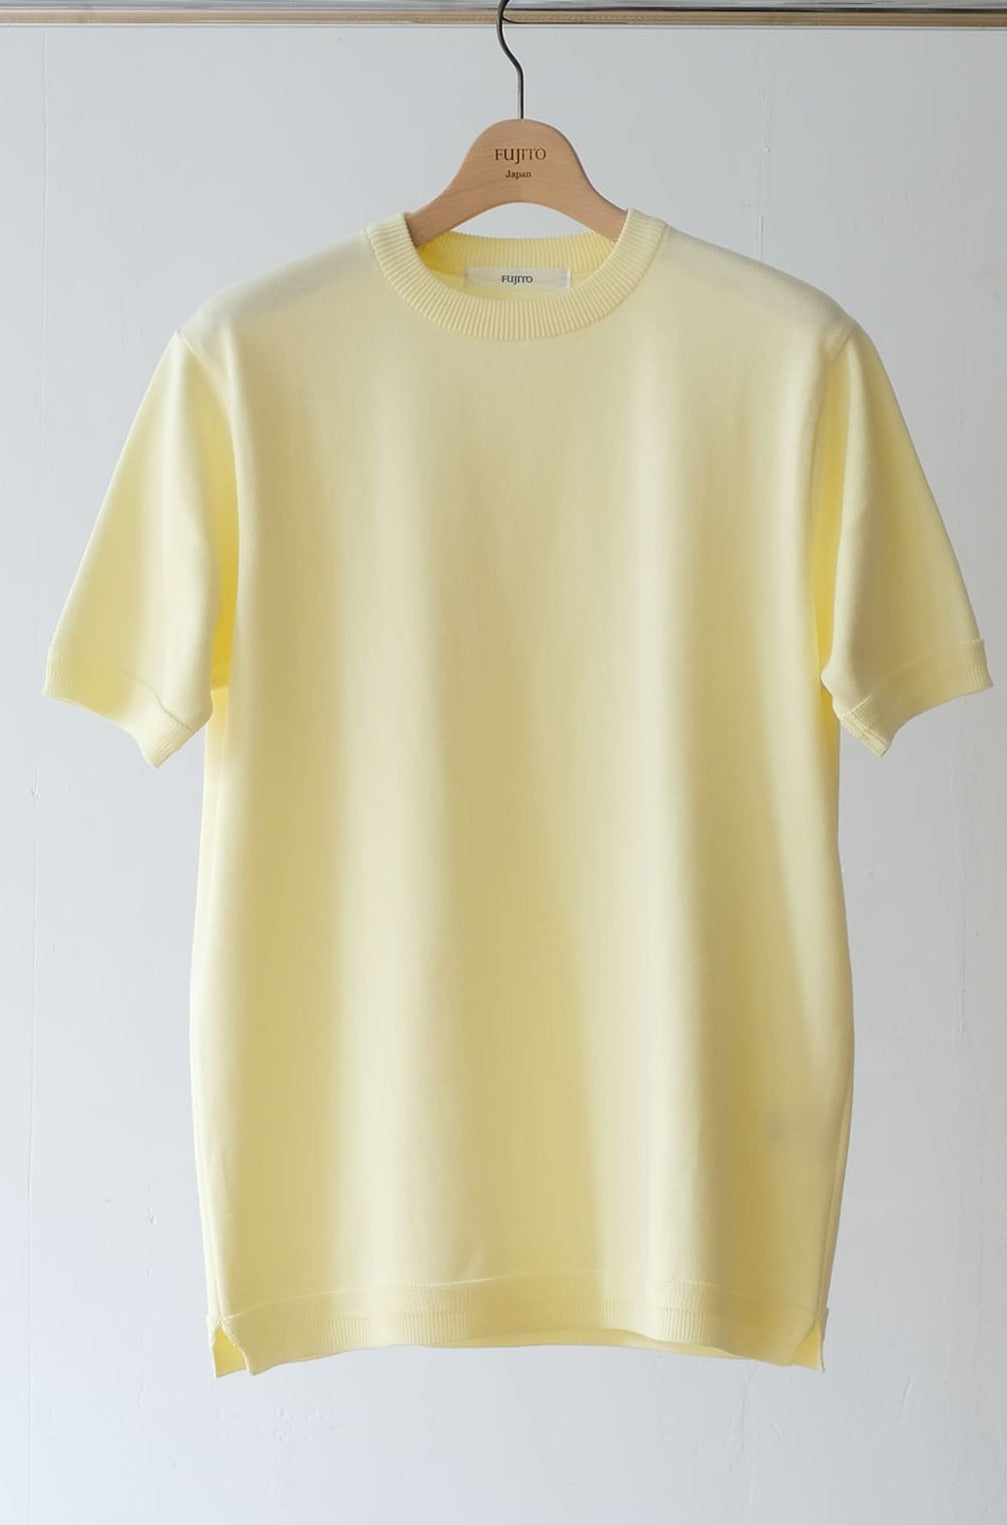 Strick Shirt lemon